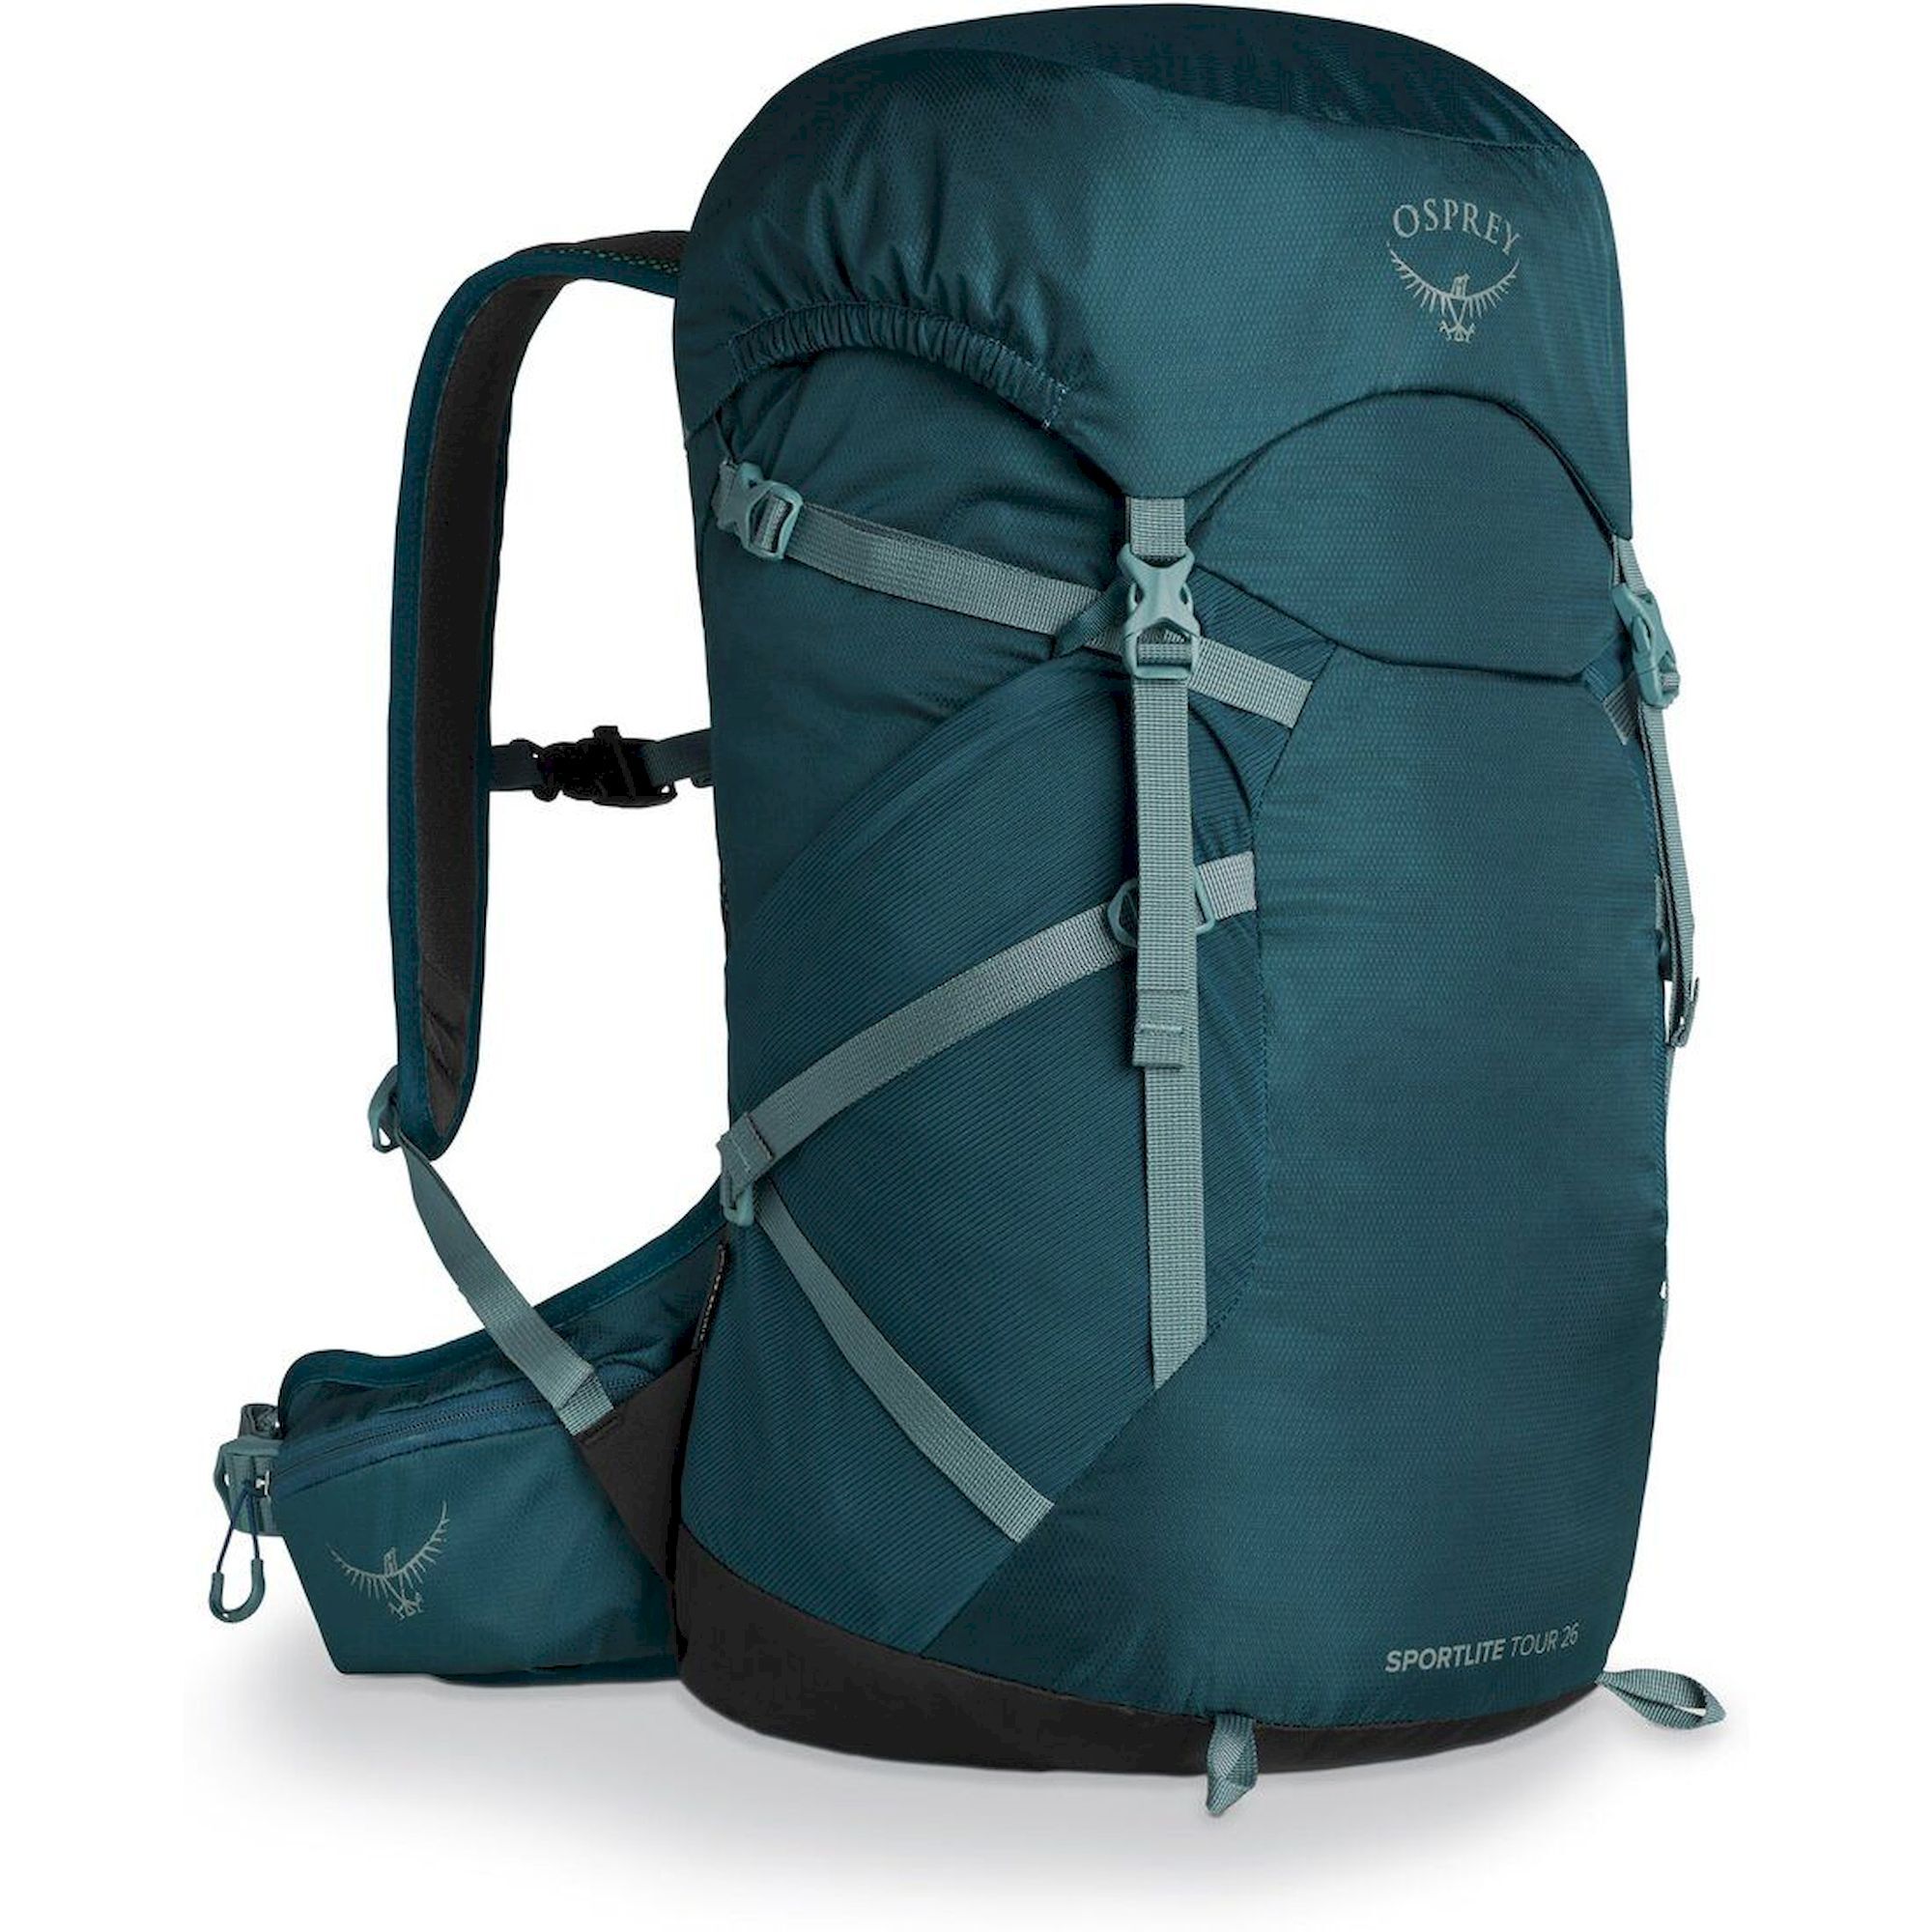 Osprey Sportlite Tour 26 - Walking backpack | Hardloop